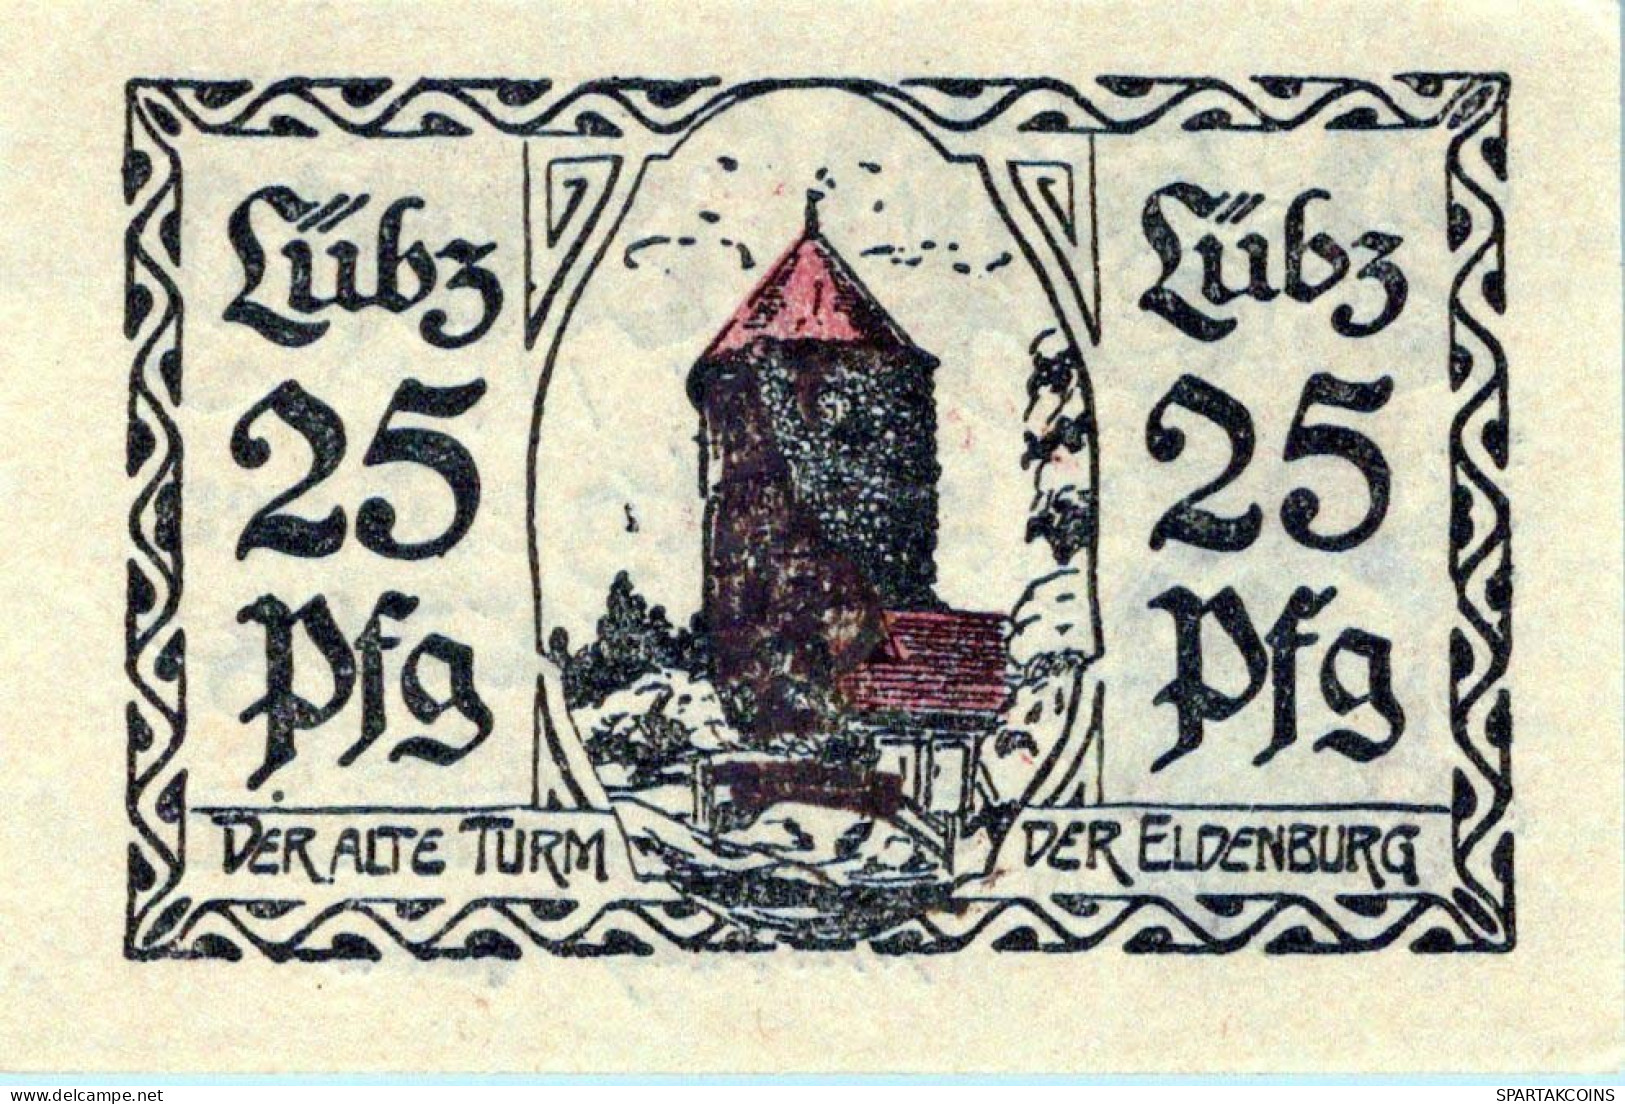 25 PFENNIG 1923 Stadt LÜBZ Mecklenburg-Schwerin UNC DEUTSCHLAND Notgeld #PC624 - [11] Emissions Locales